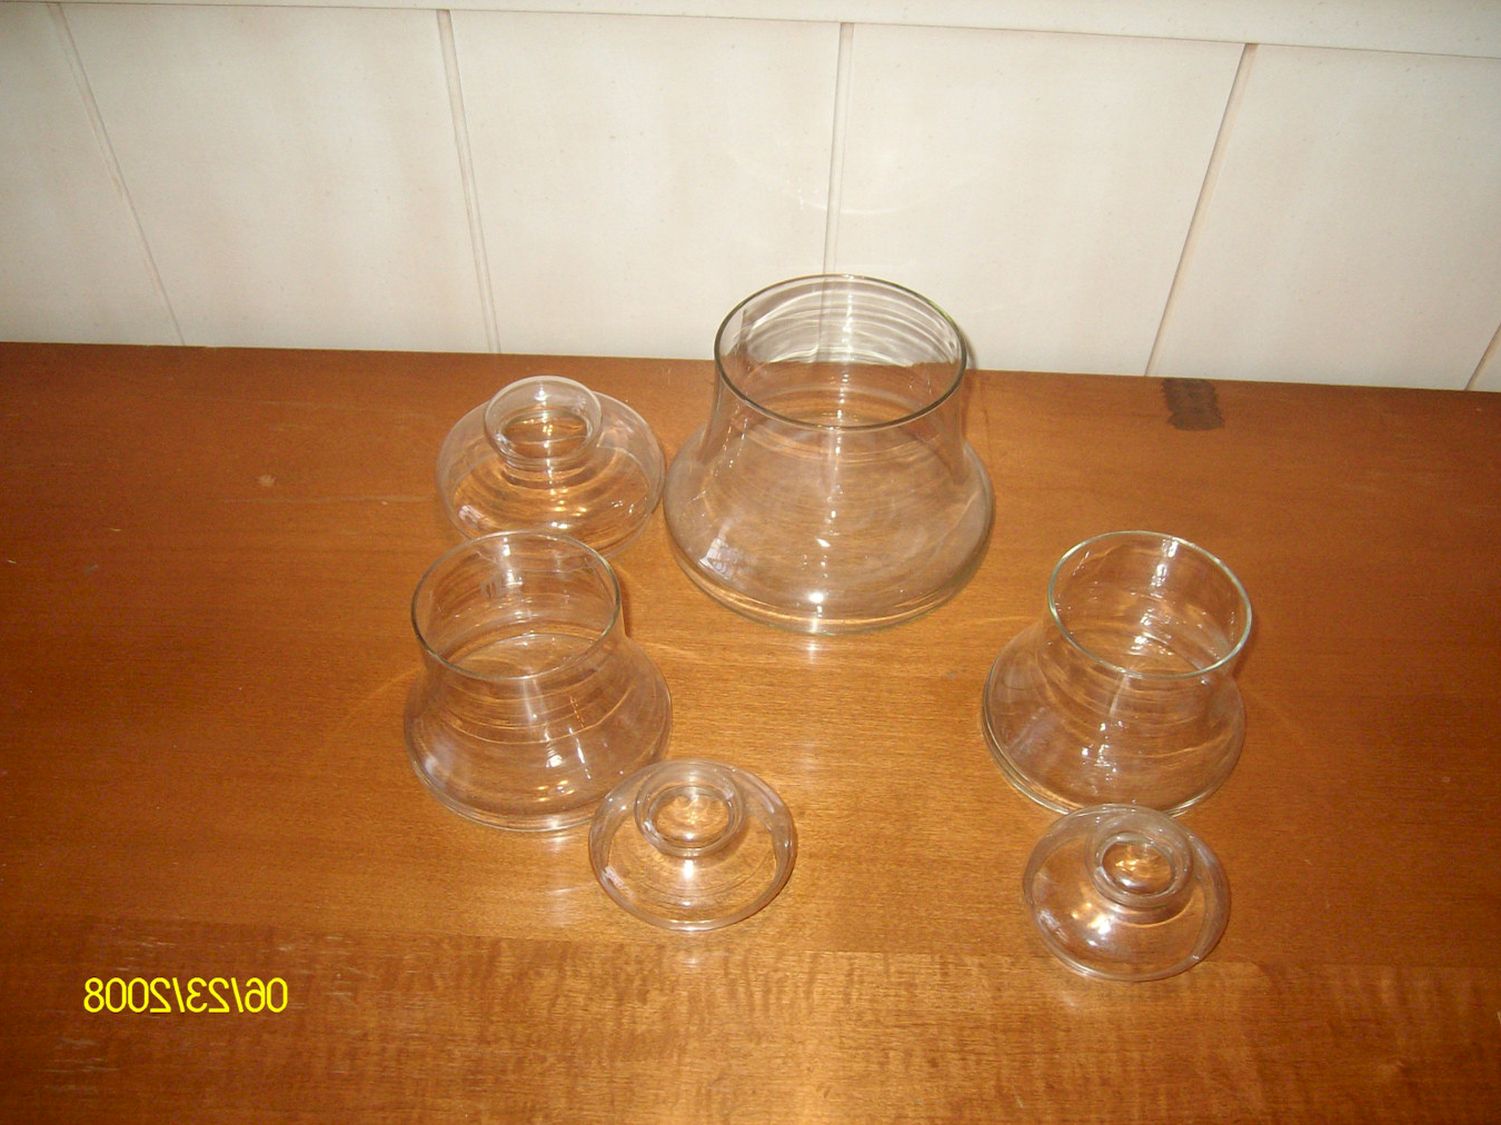 Storage Jars For Kitchen photo - 4